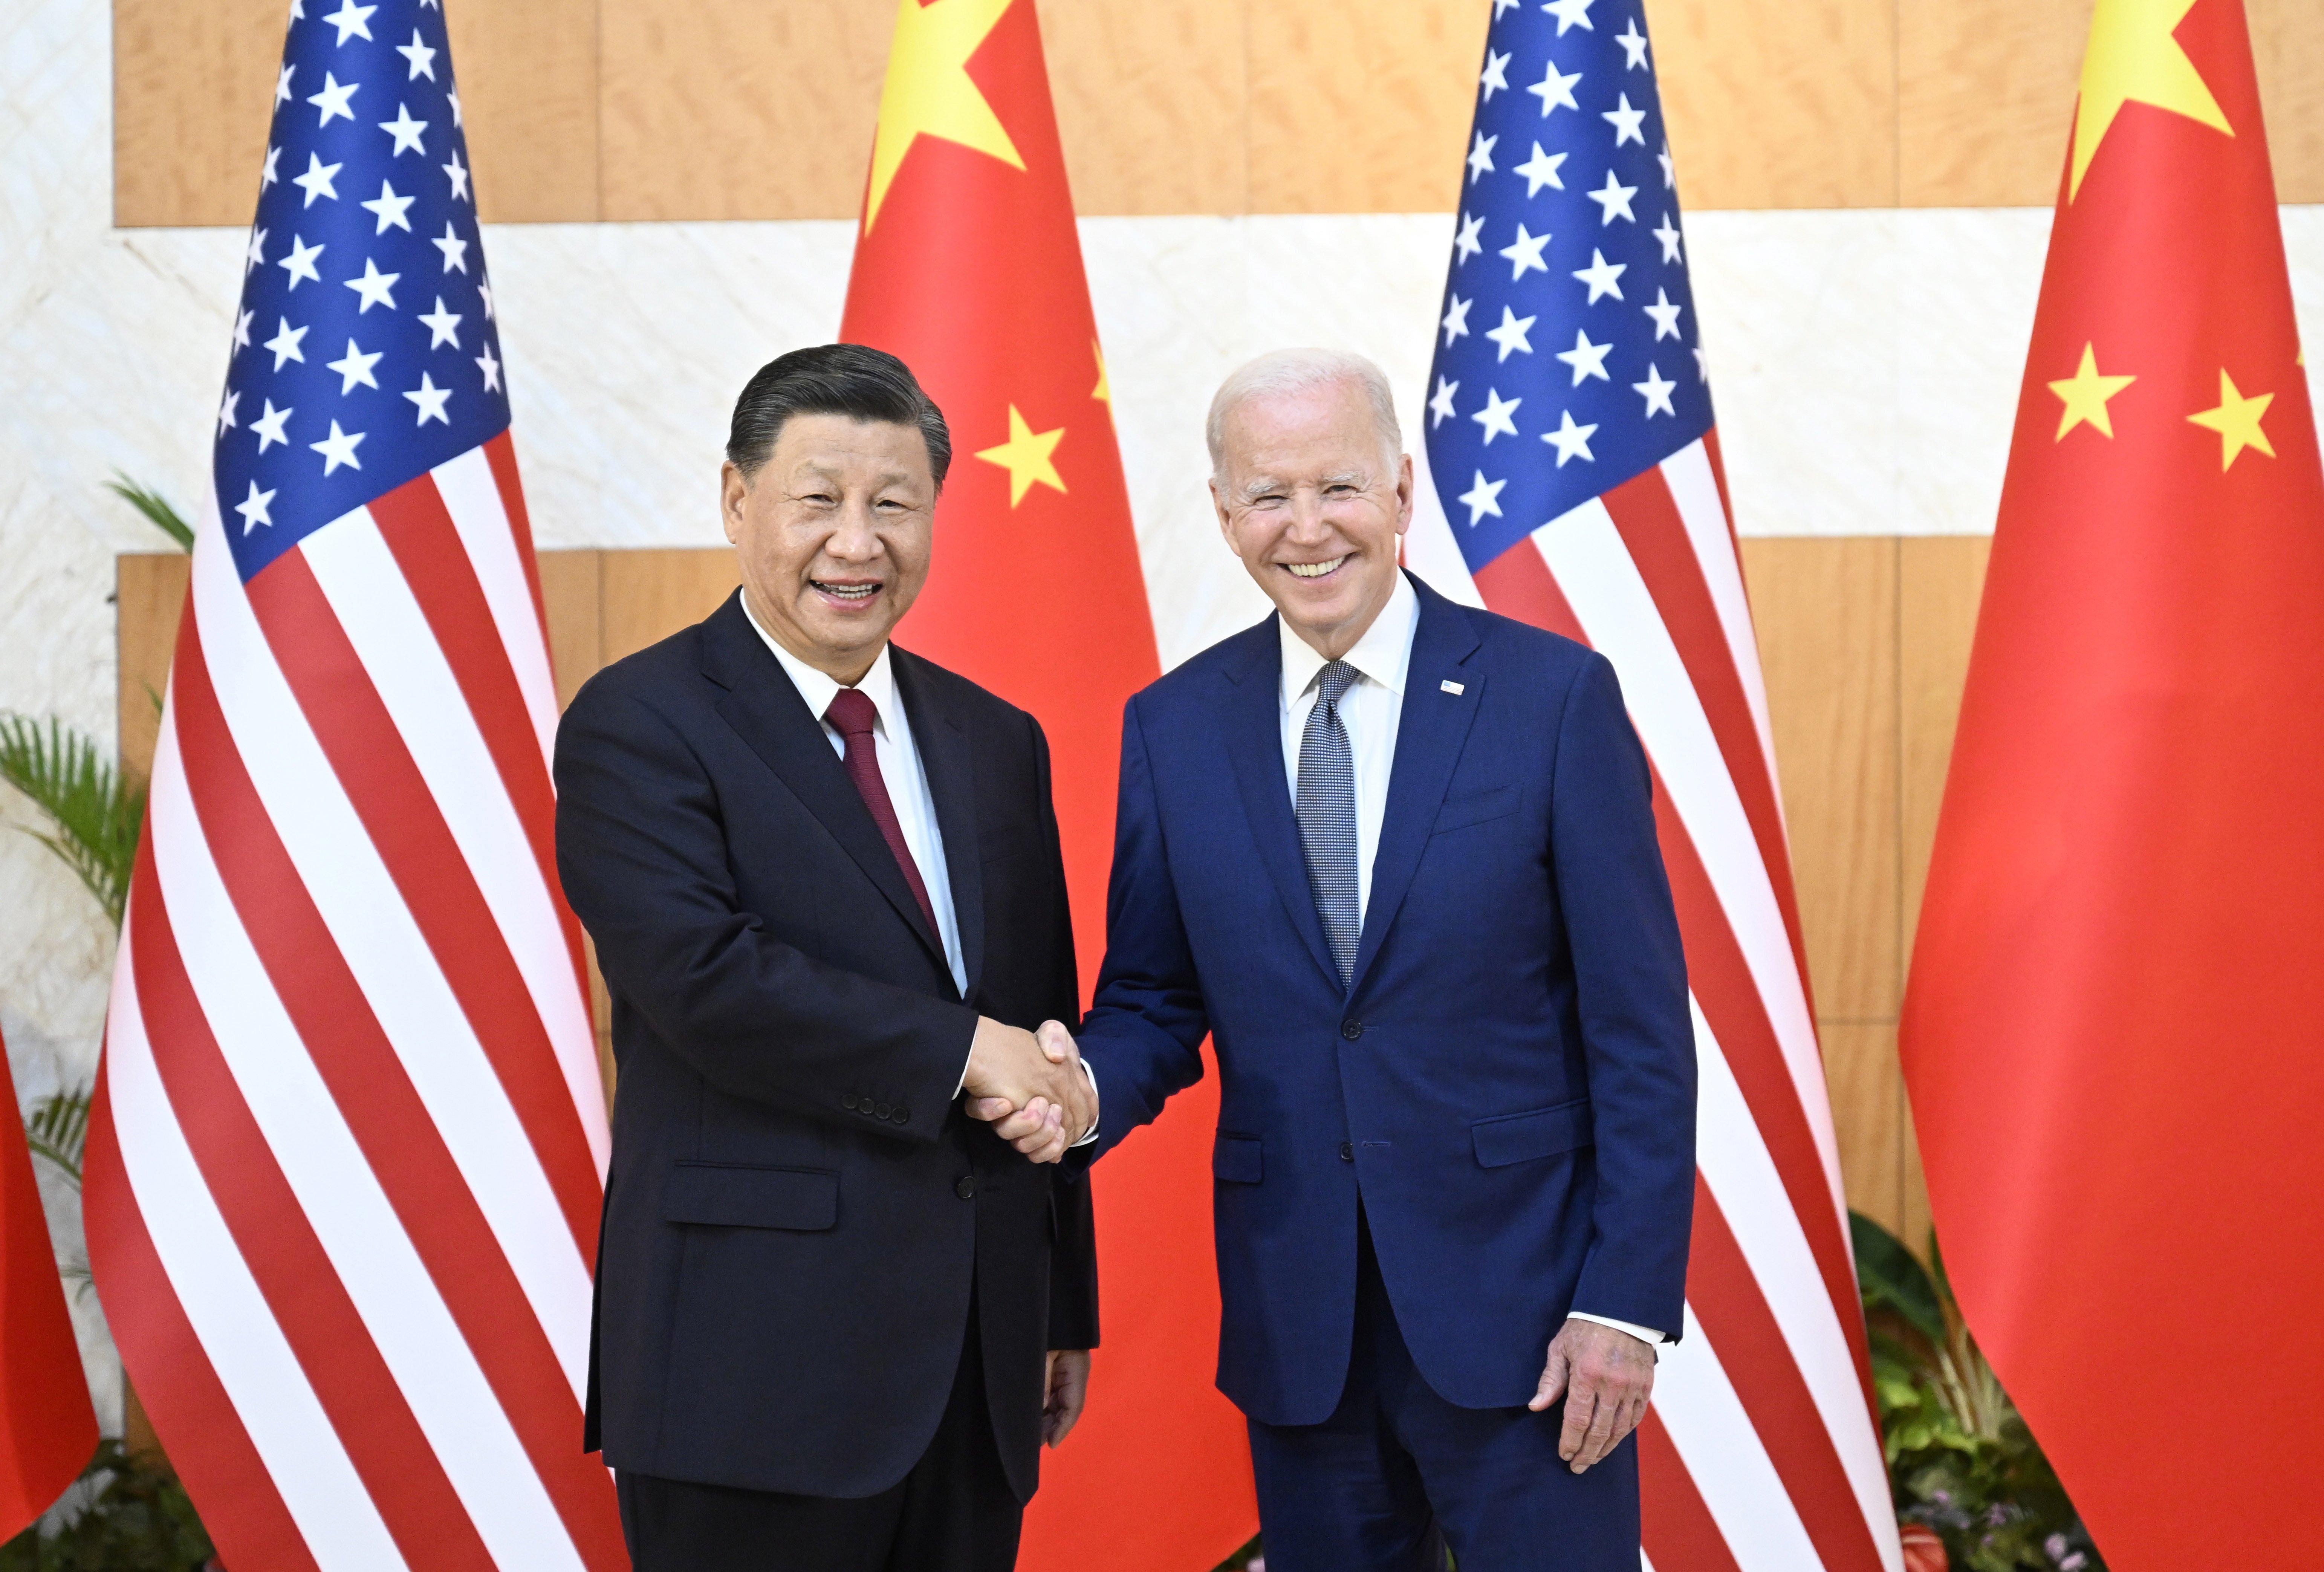 Primer encuentro de Xi Jinping y Joe Biden: expresan la voluntad de trabajar conjuntamente